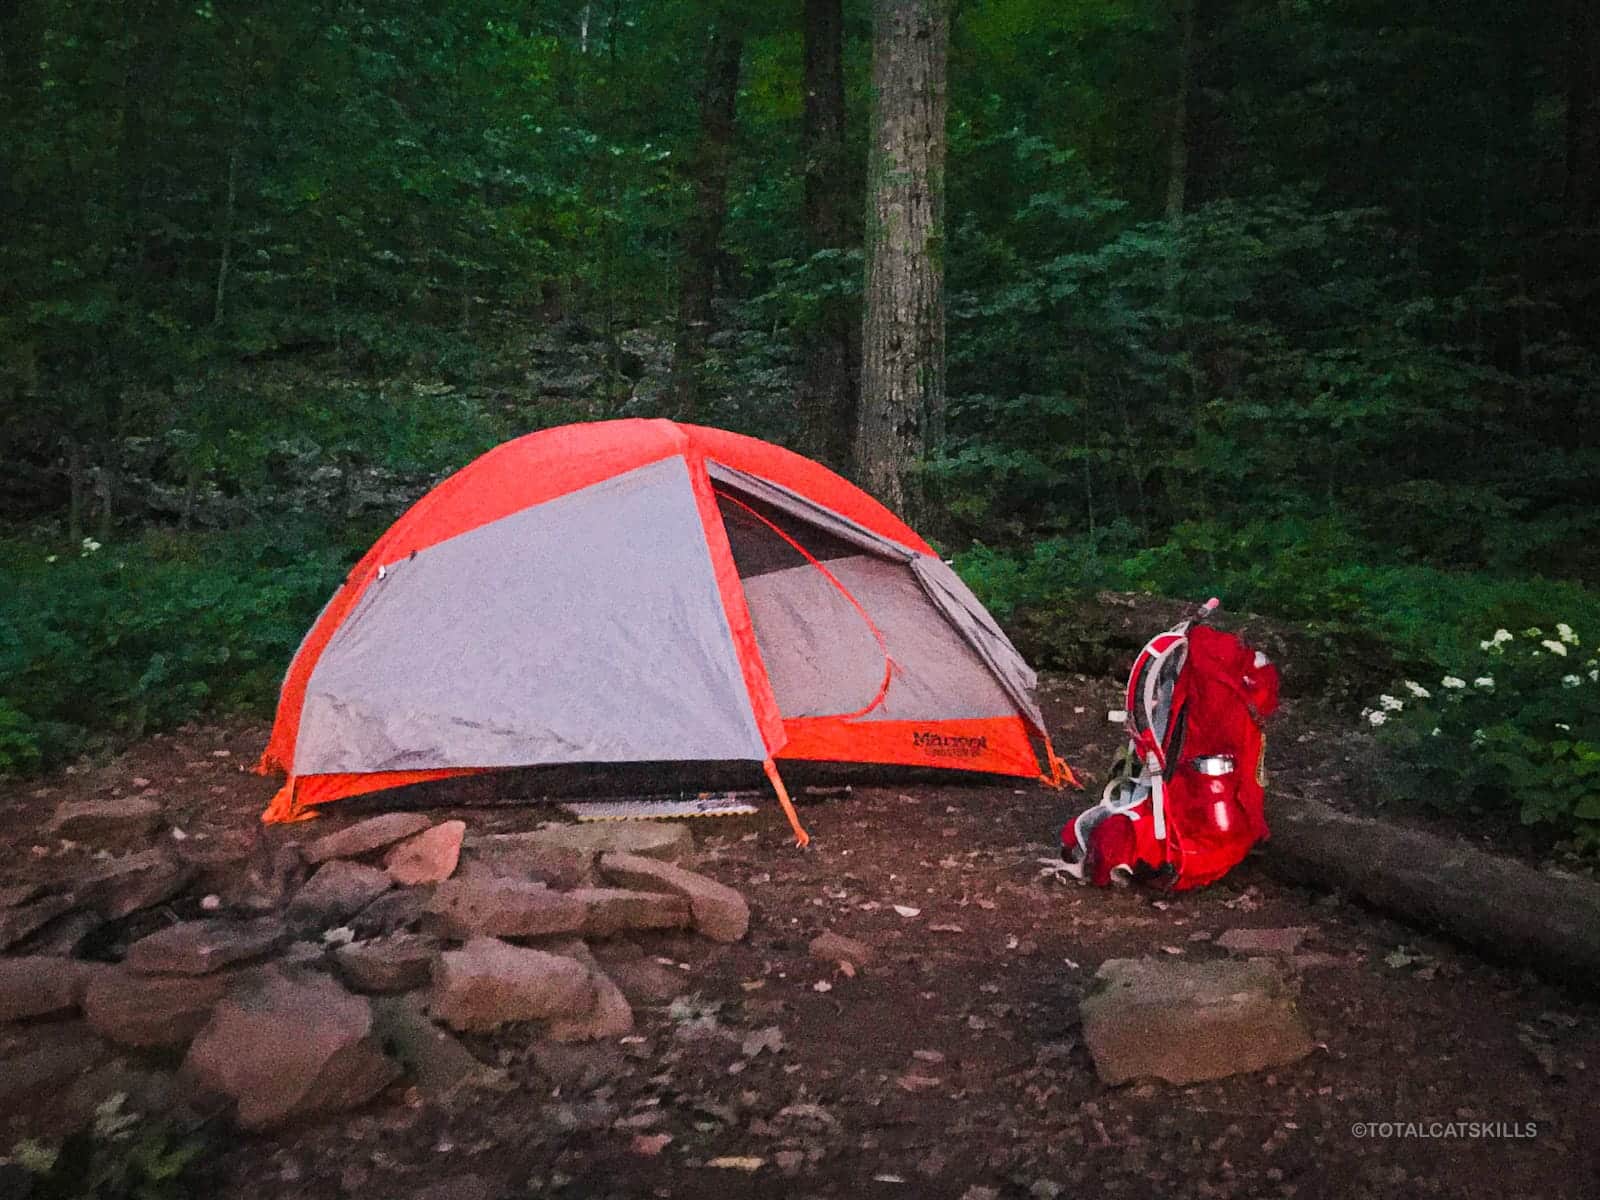 marmot brand tent in woods